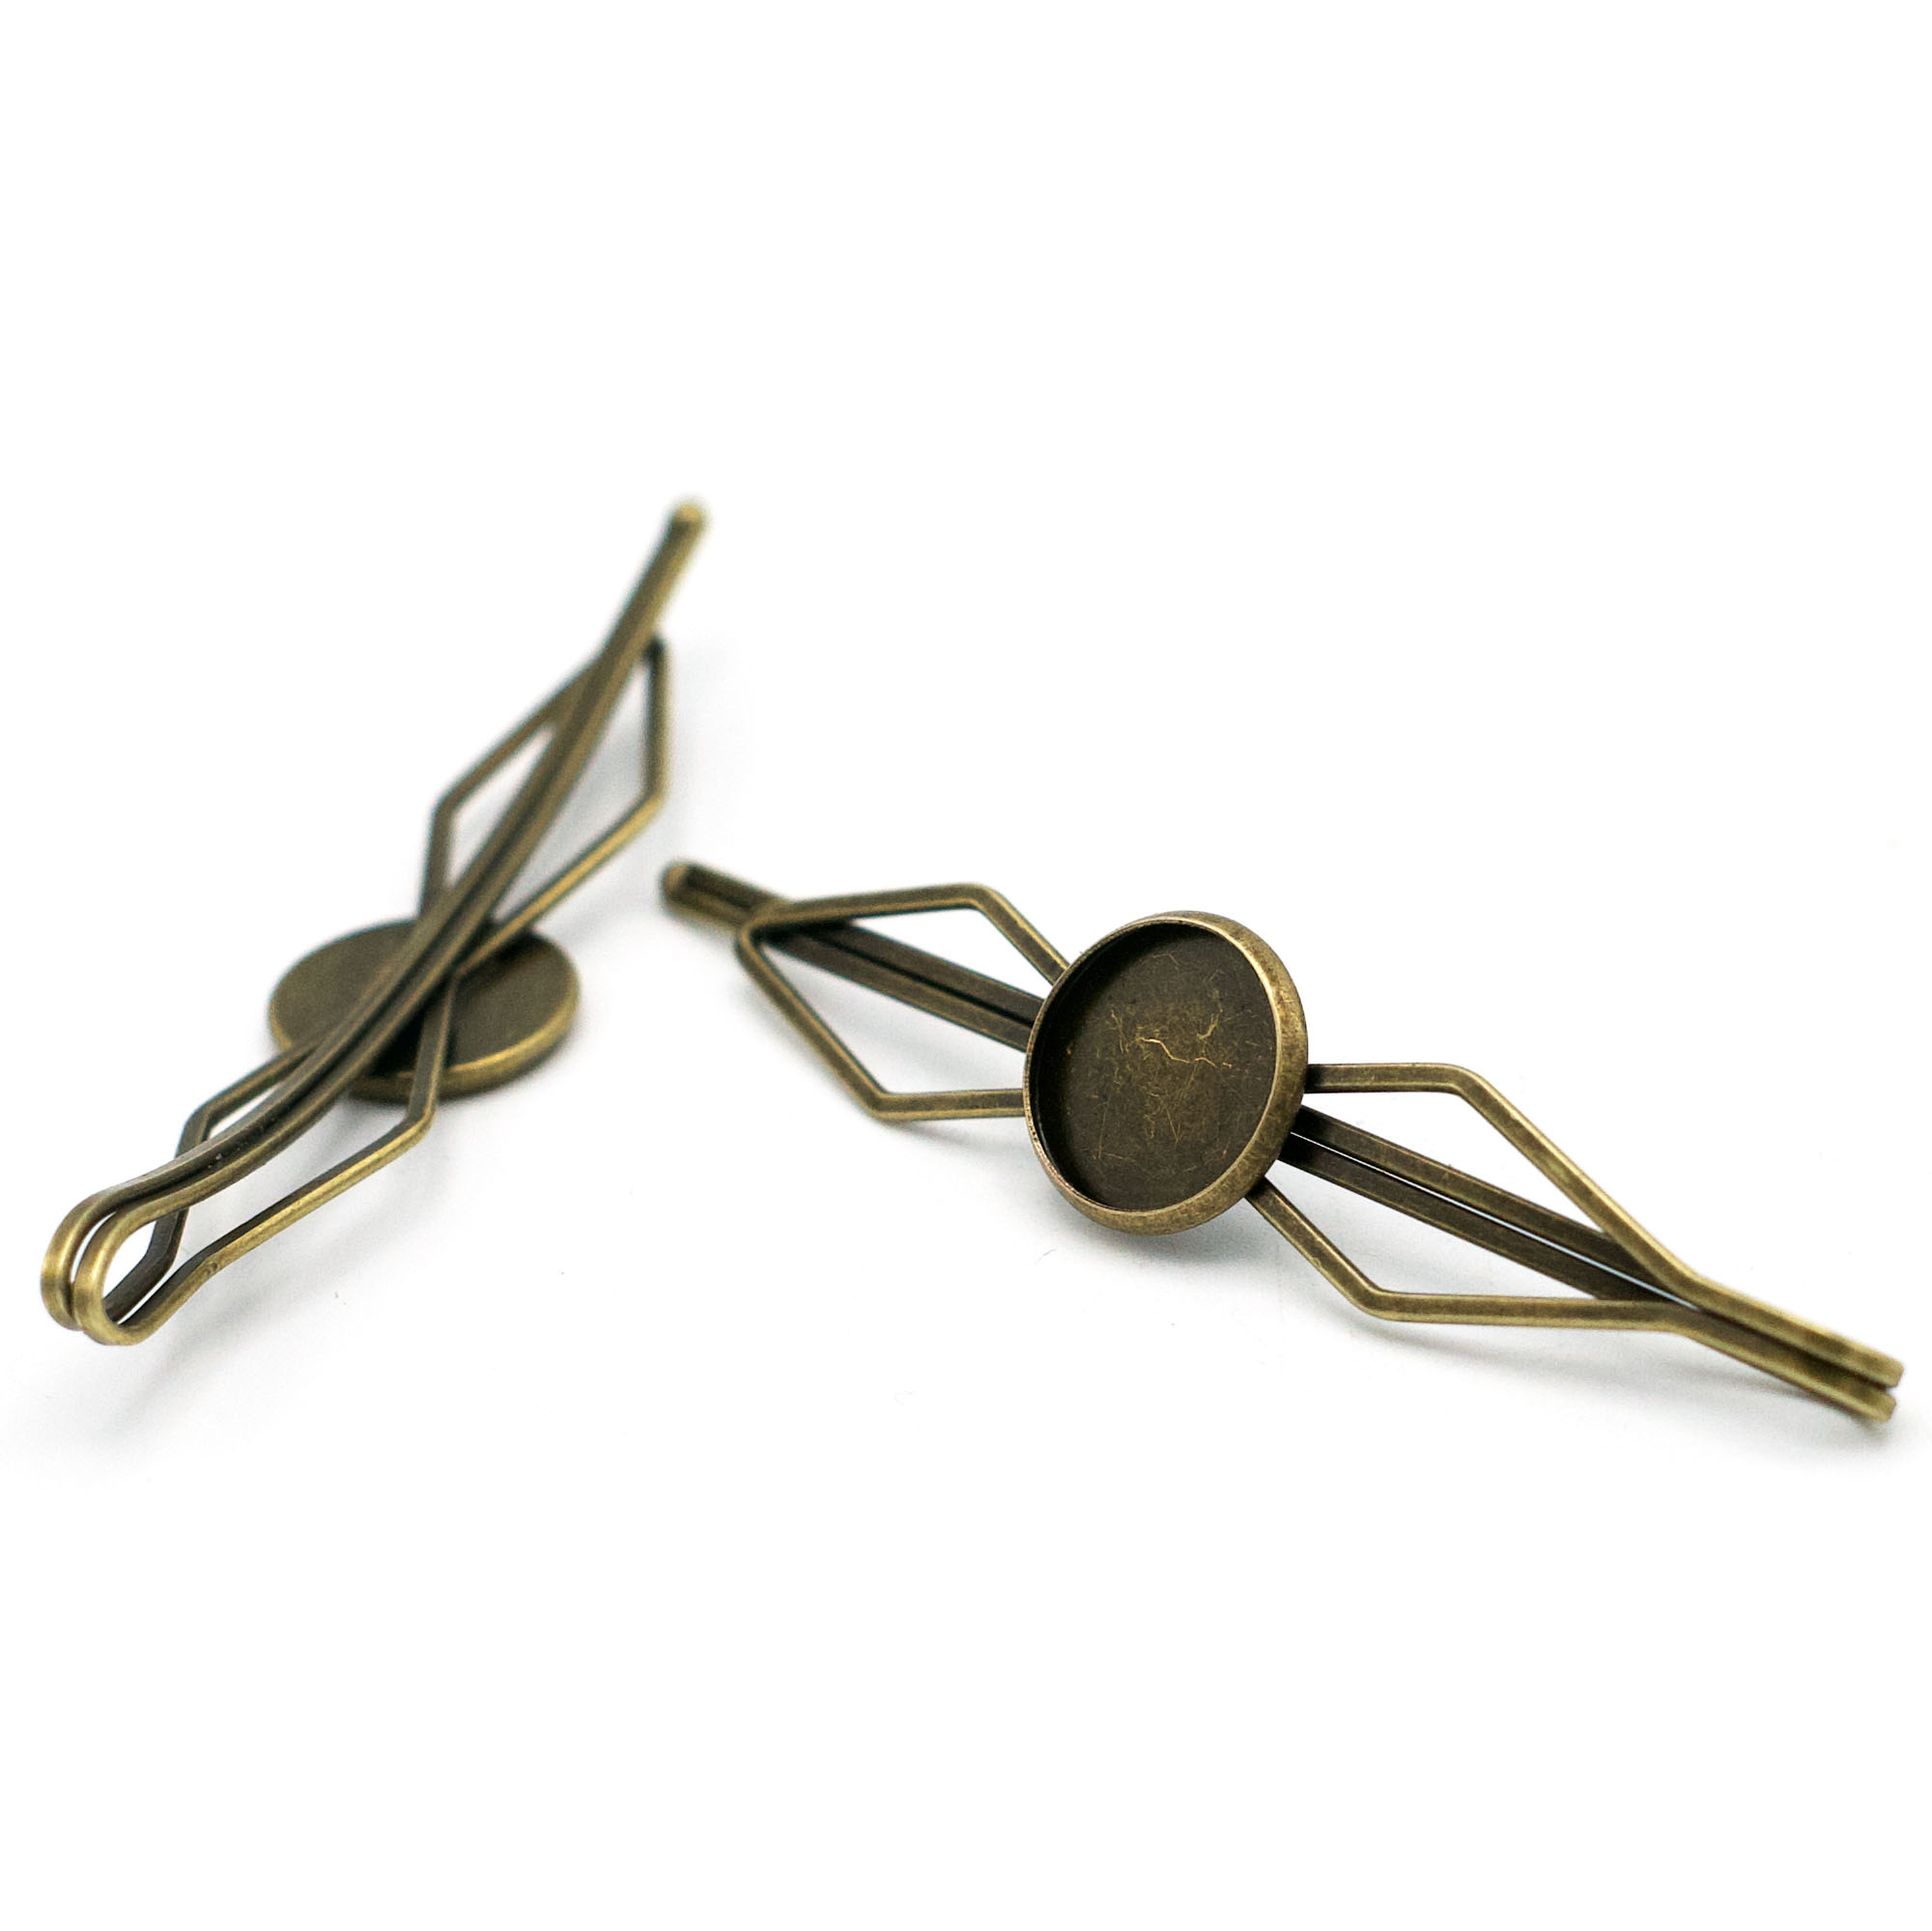 4 barrettes/épingles à cheveux supports cabochons 12 mm, bronze